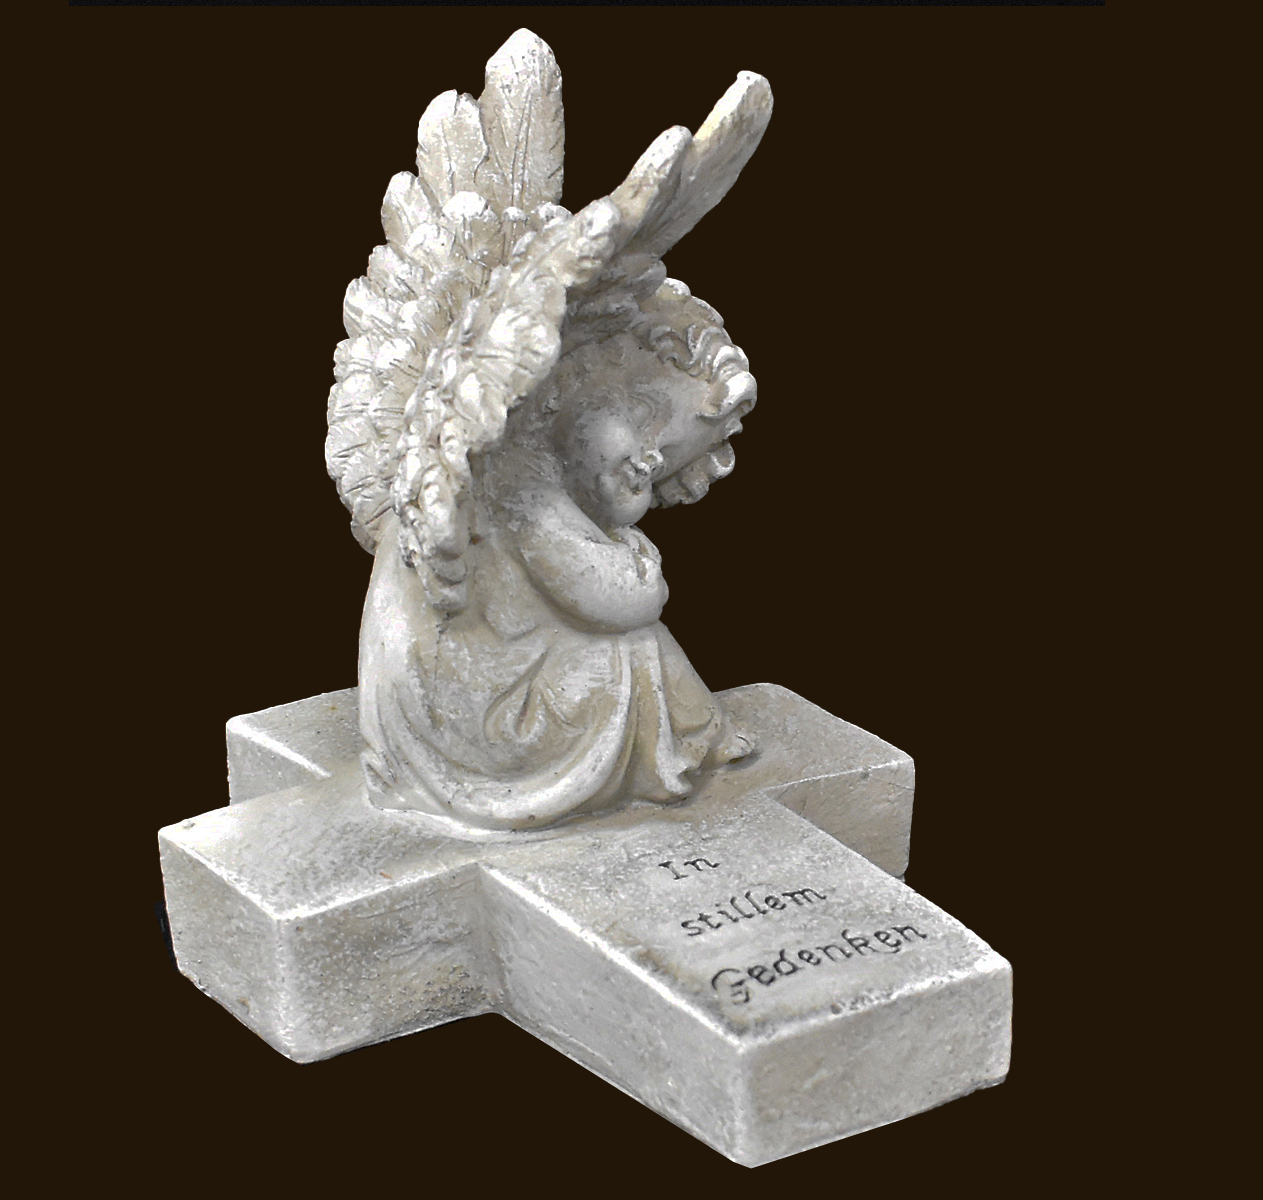 Engel auf Kreuz sitzend «In stillem Gedenken» Höhe: 13 cm